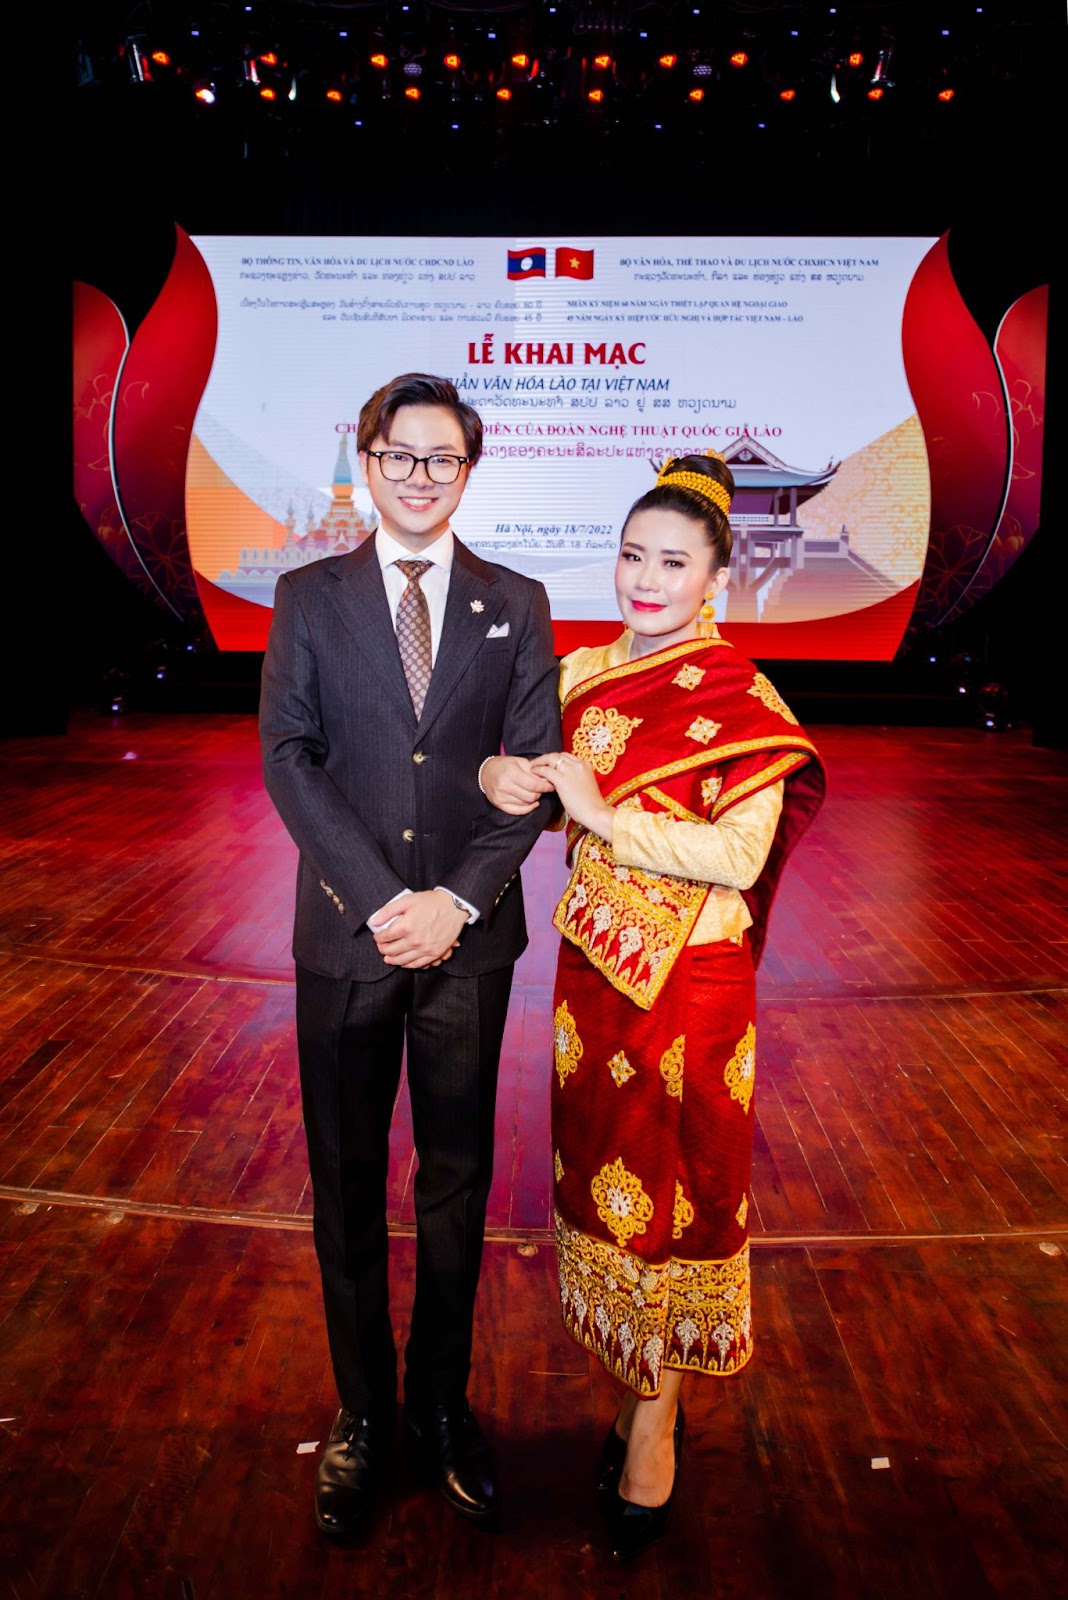 Soái ca VTV kể về kỷ niệm đáng nhớ khi làm MC 2 sự kiện văn hóa lớn về ngoại giao tại Việt Nam - Hình 2